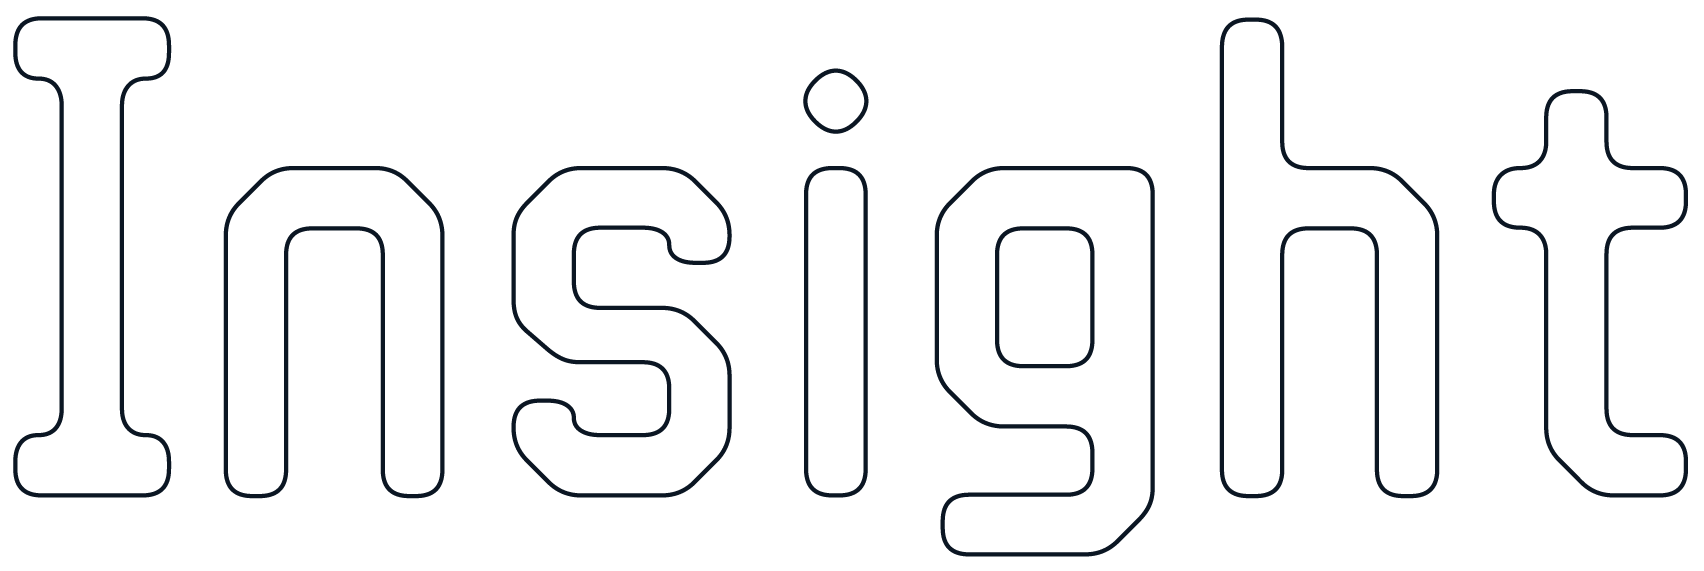 PlayTracker Insight logo